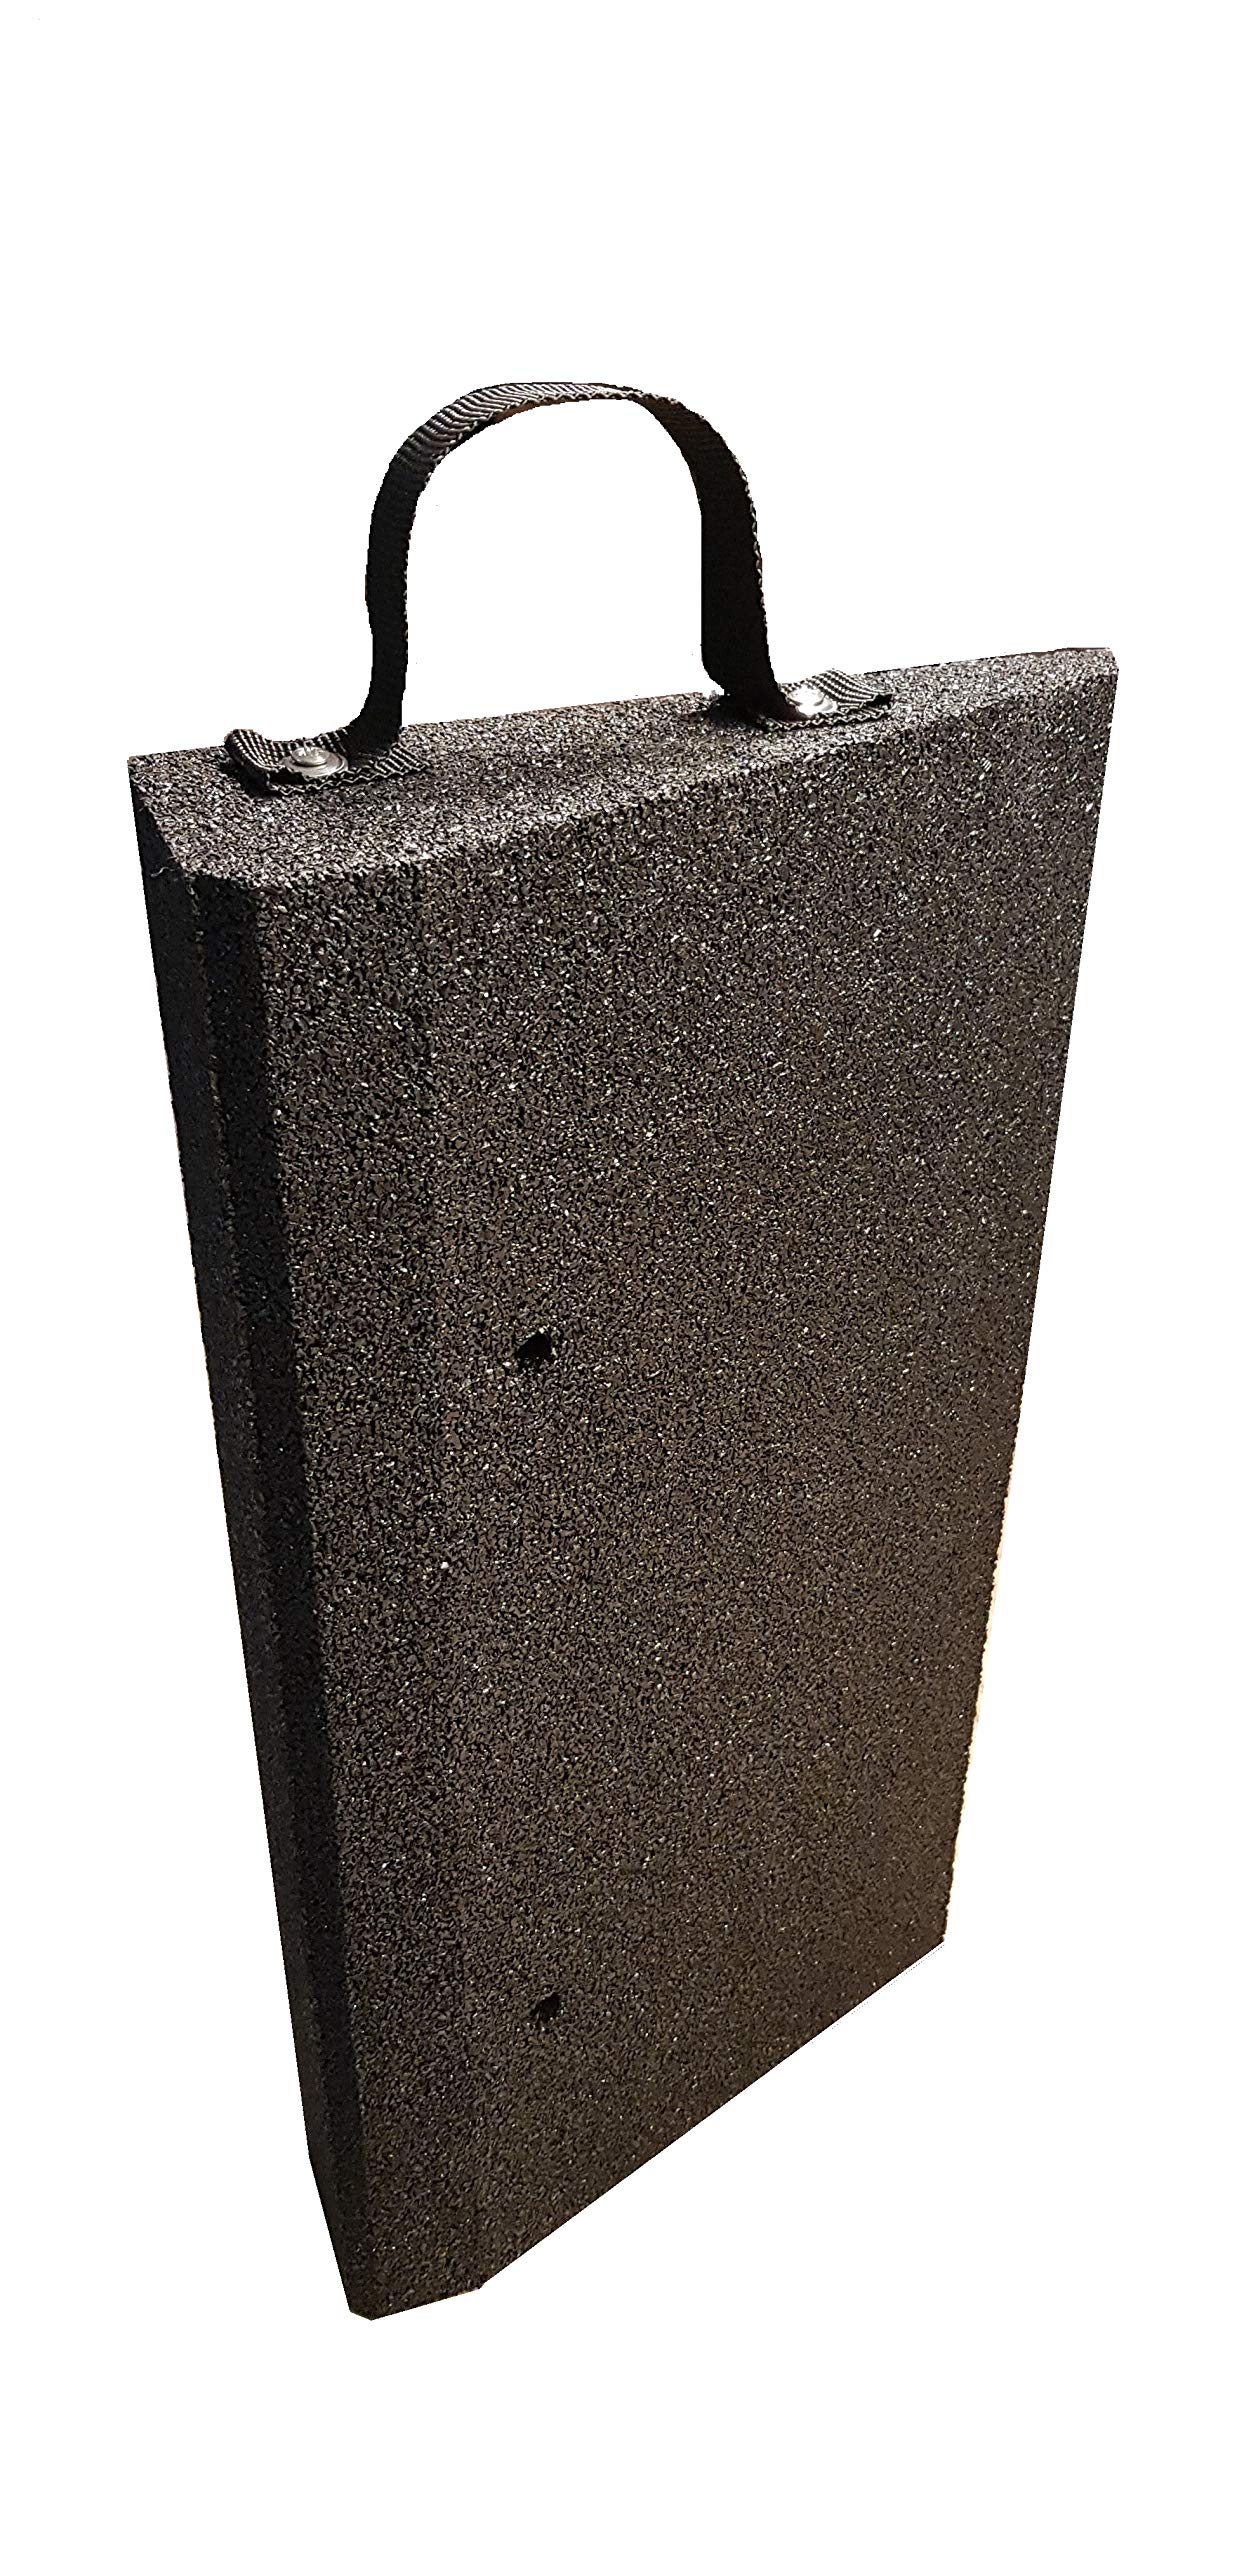 bepco Bordsteinrampen-Set (2 Stück) mit Griff-Schlaufen, LxBxH: 50 x 25 x 10 cm aus Gummi (schwarz) Auffahrrampe,Türschwellenrampe, mit eingelagerten Unterlegscheiben zur Befestigung